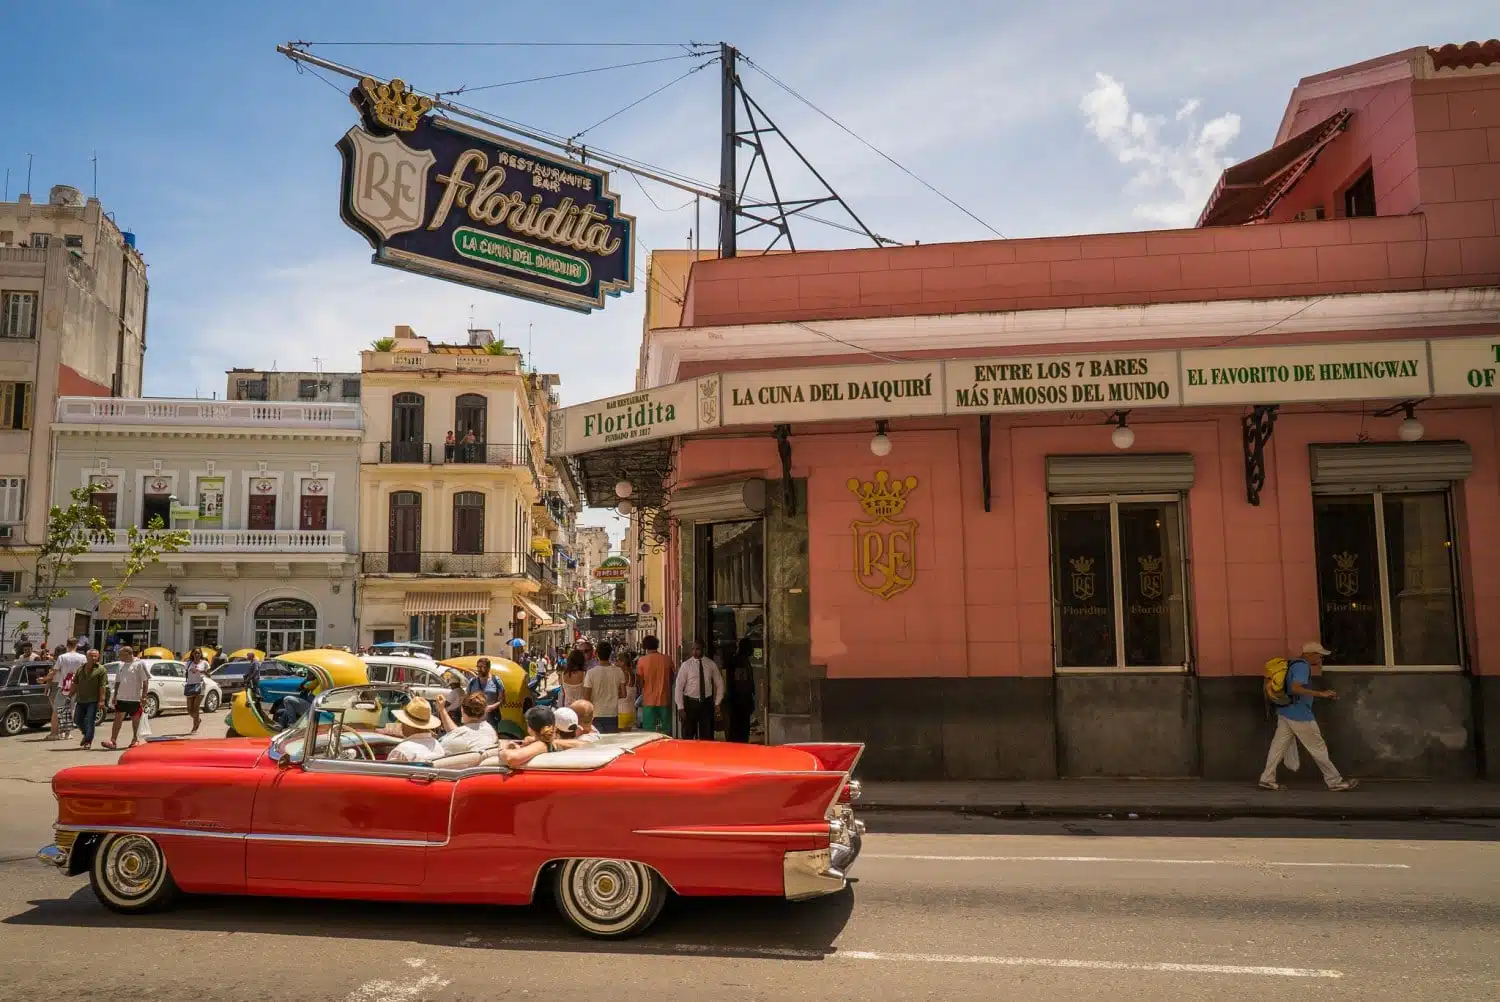 El Floridita Havana is one of the best bars in Havana and one of Hemingway's old favourite haunts